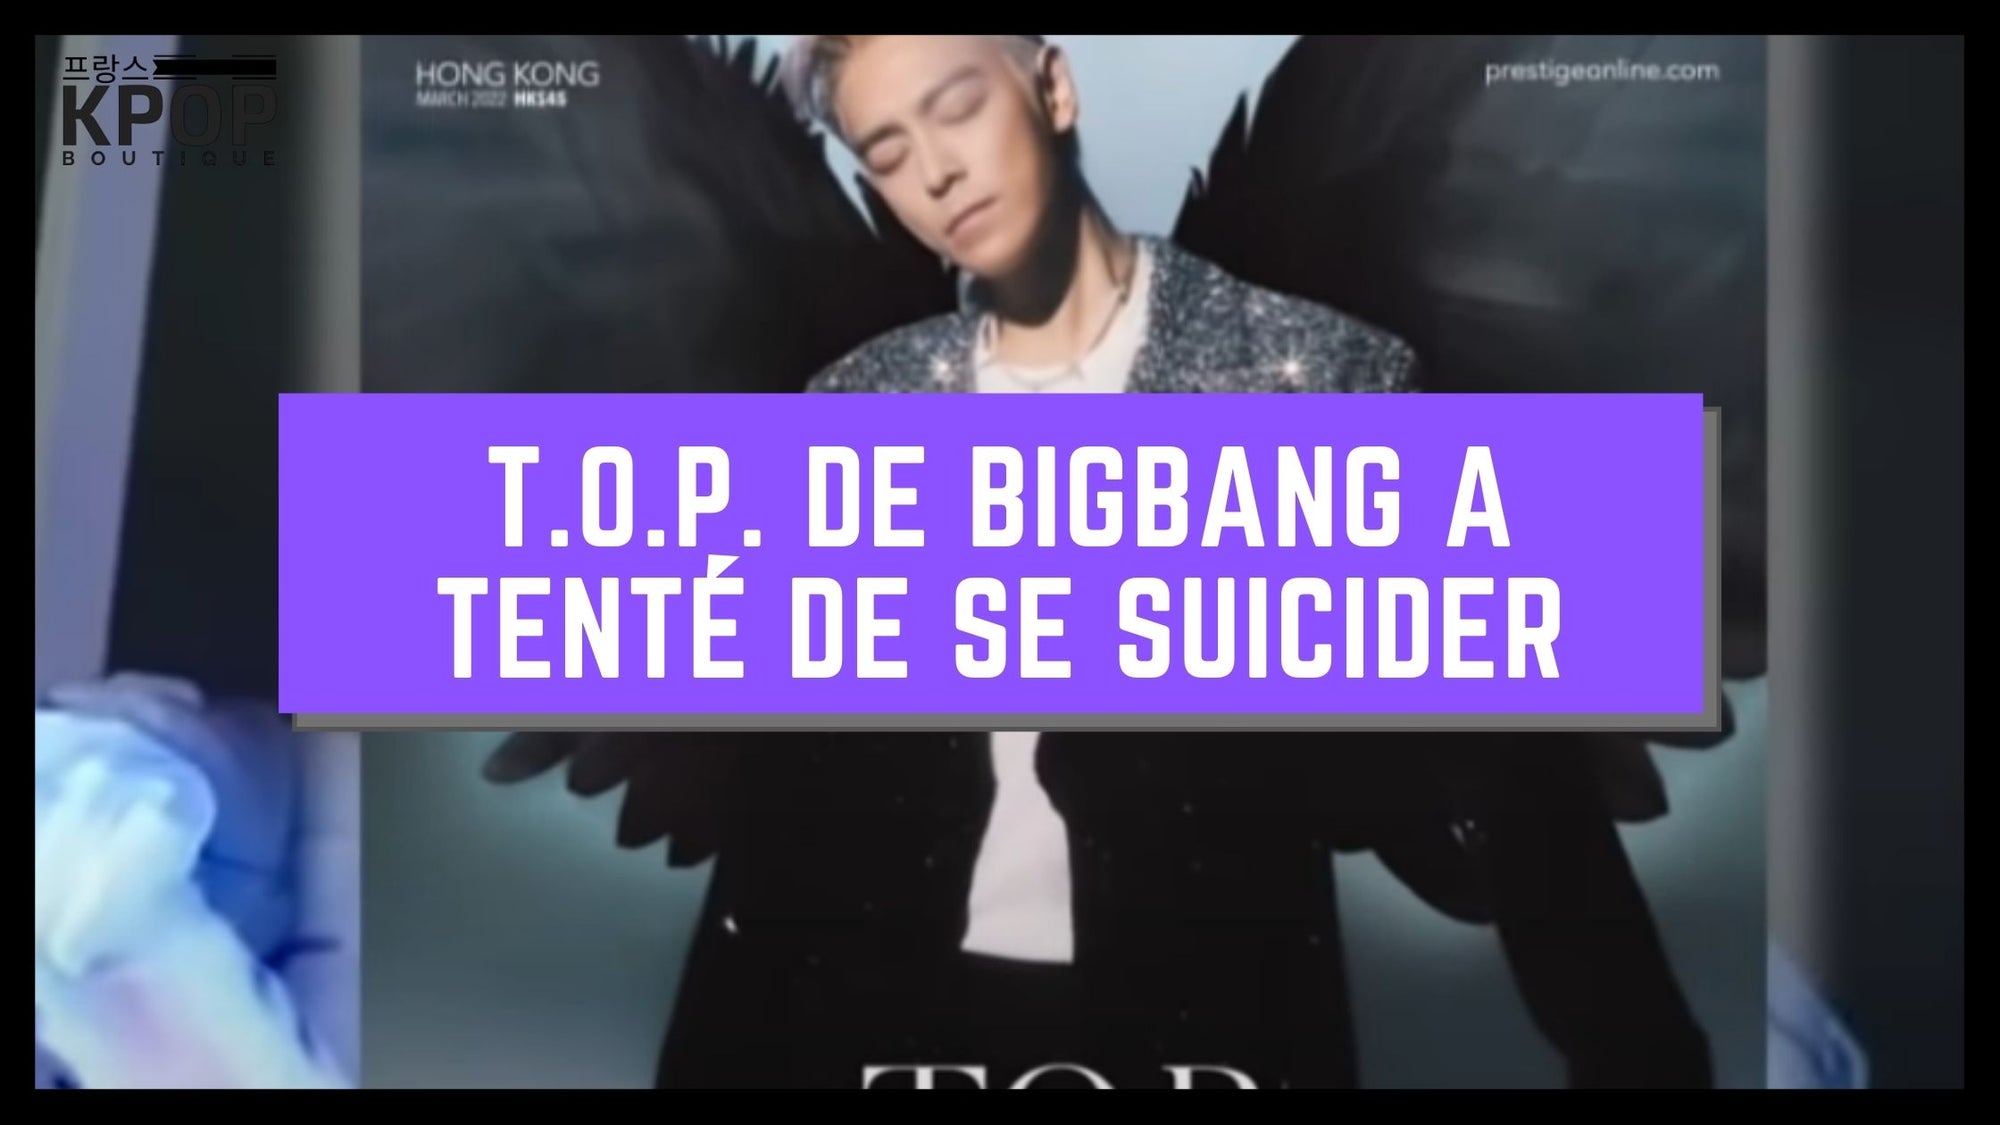 T.O.P. de BIGBANG A TENTE DE SE SUICIDER